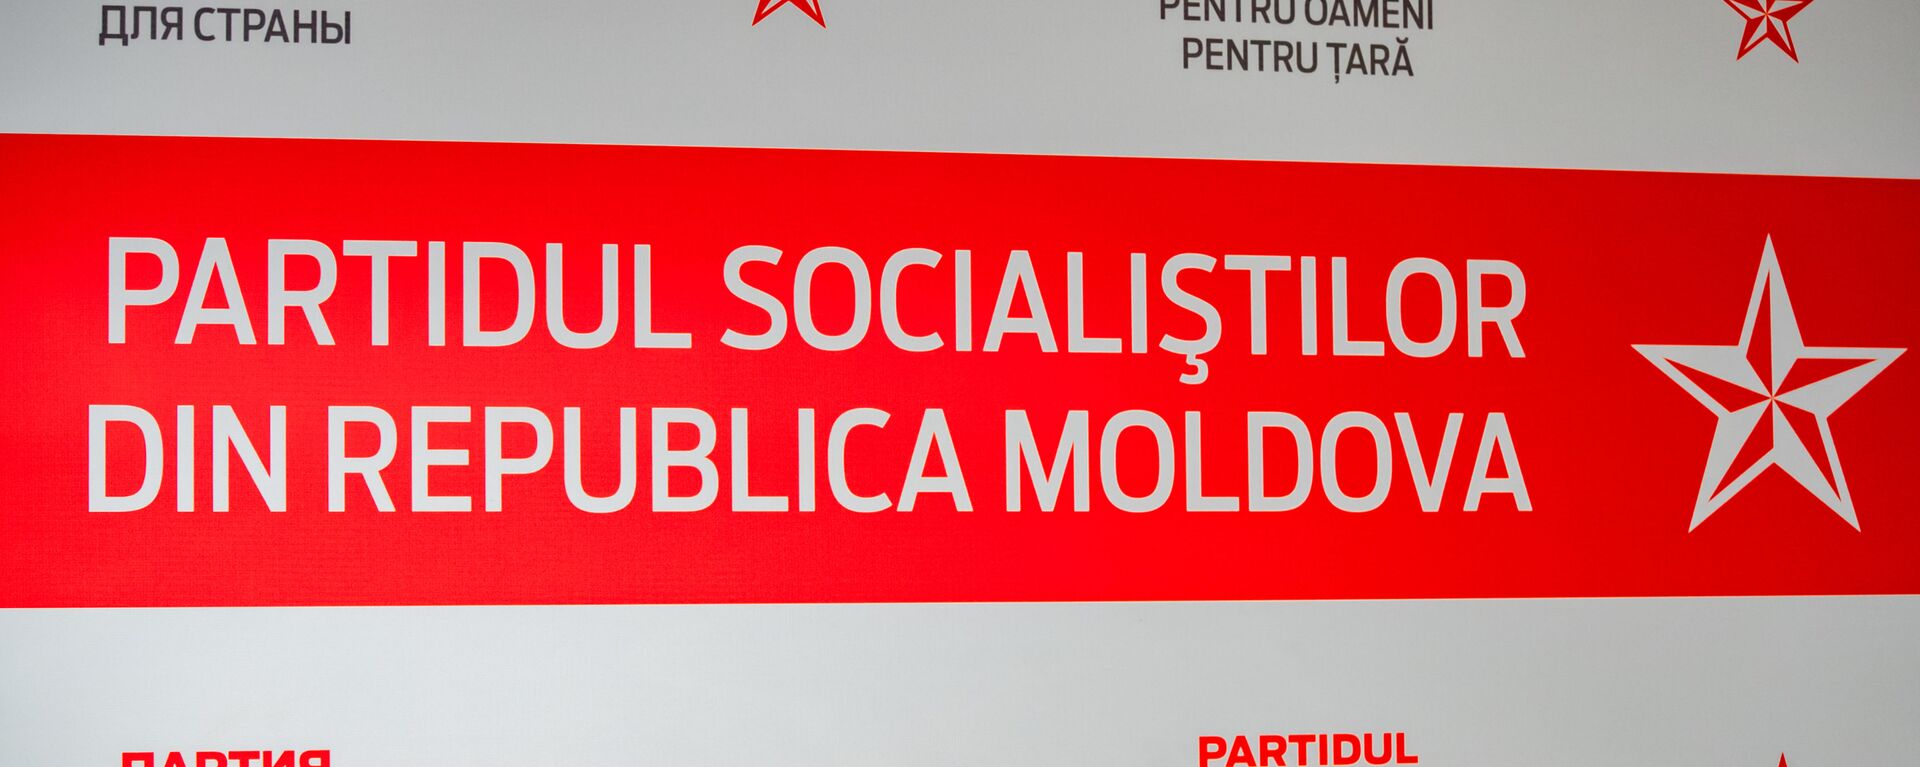 Partidul Socialiștilor din Republica Moldova - Sputnik Moldova, 1920, 05.04.2021